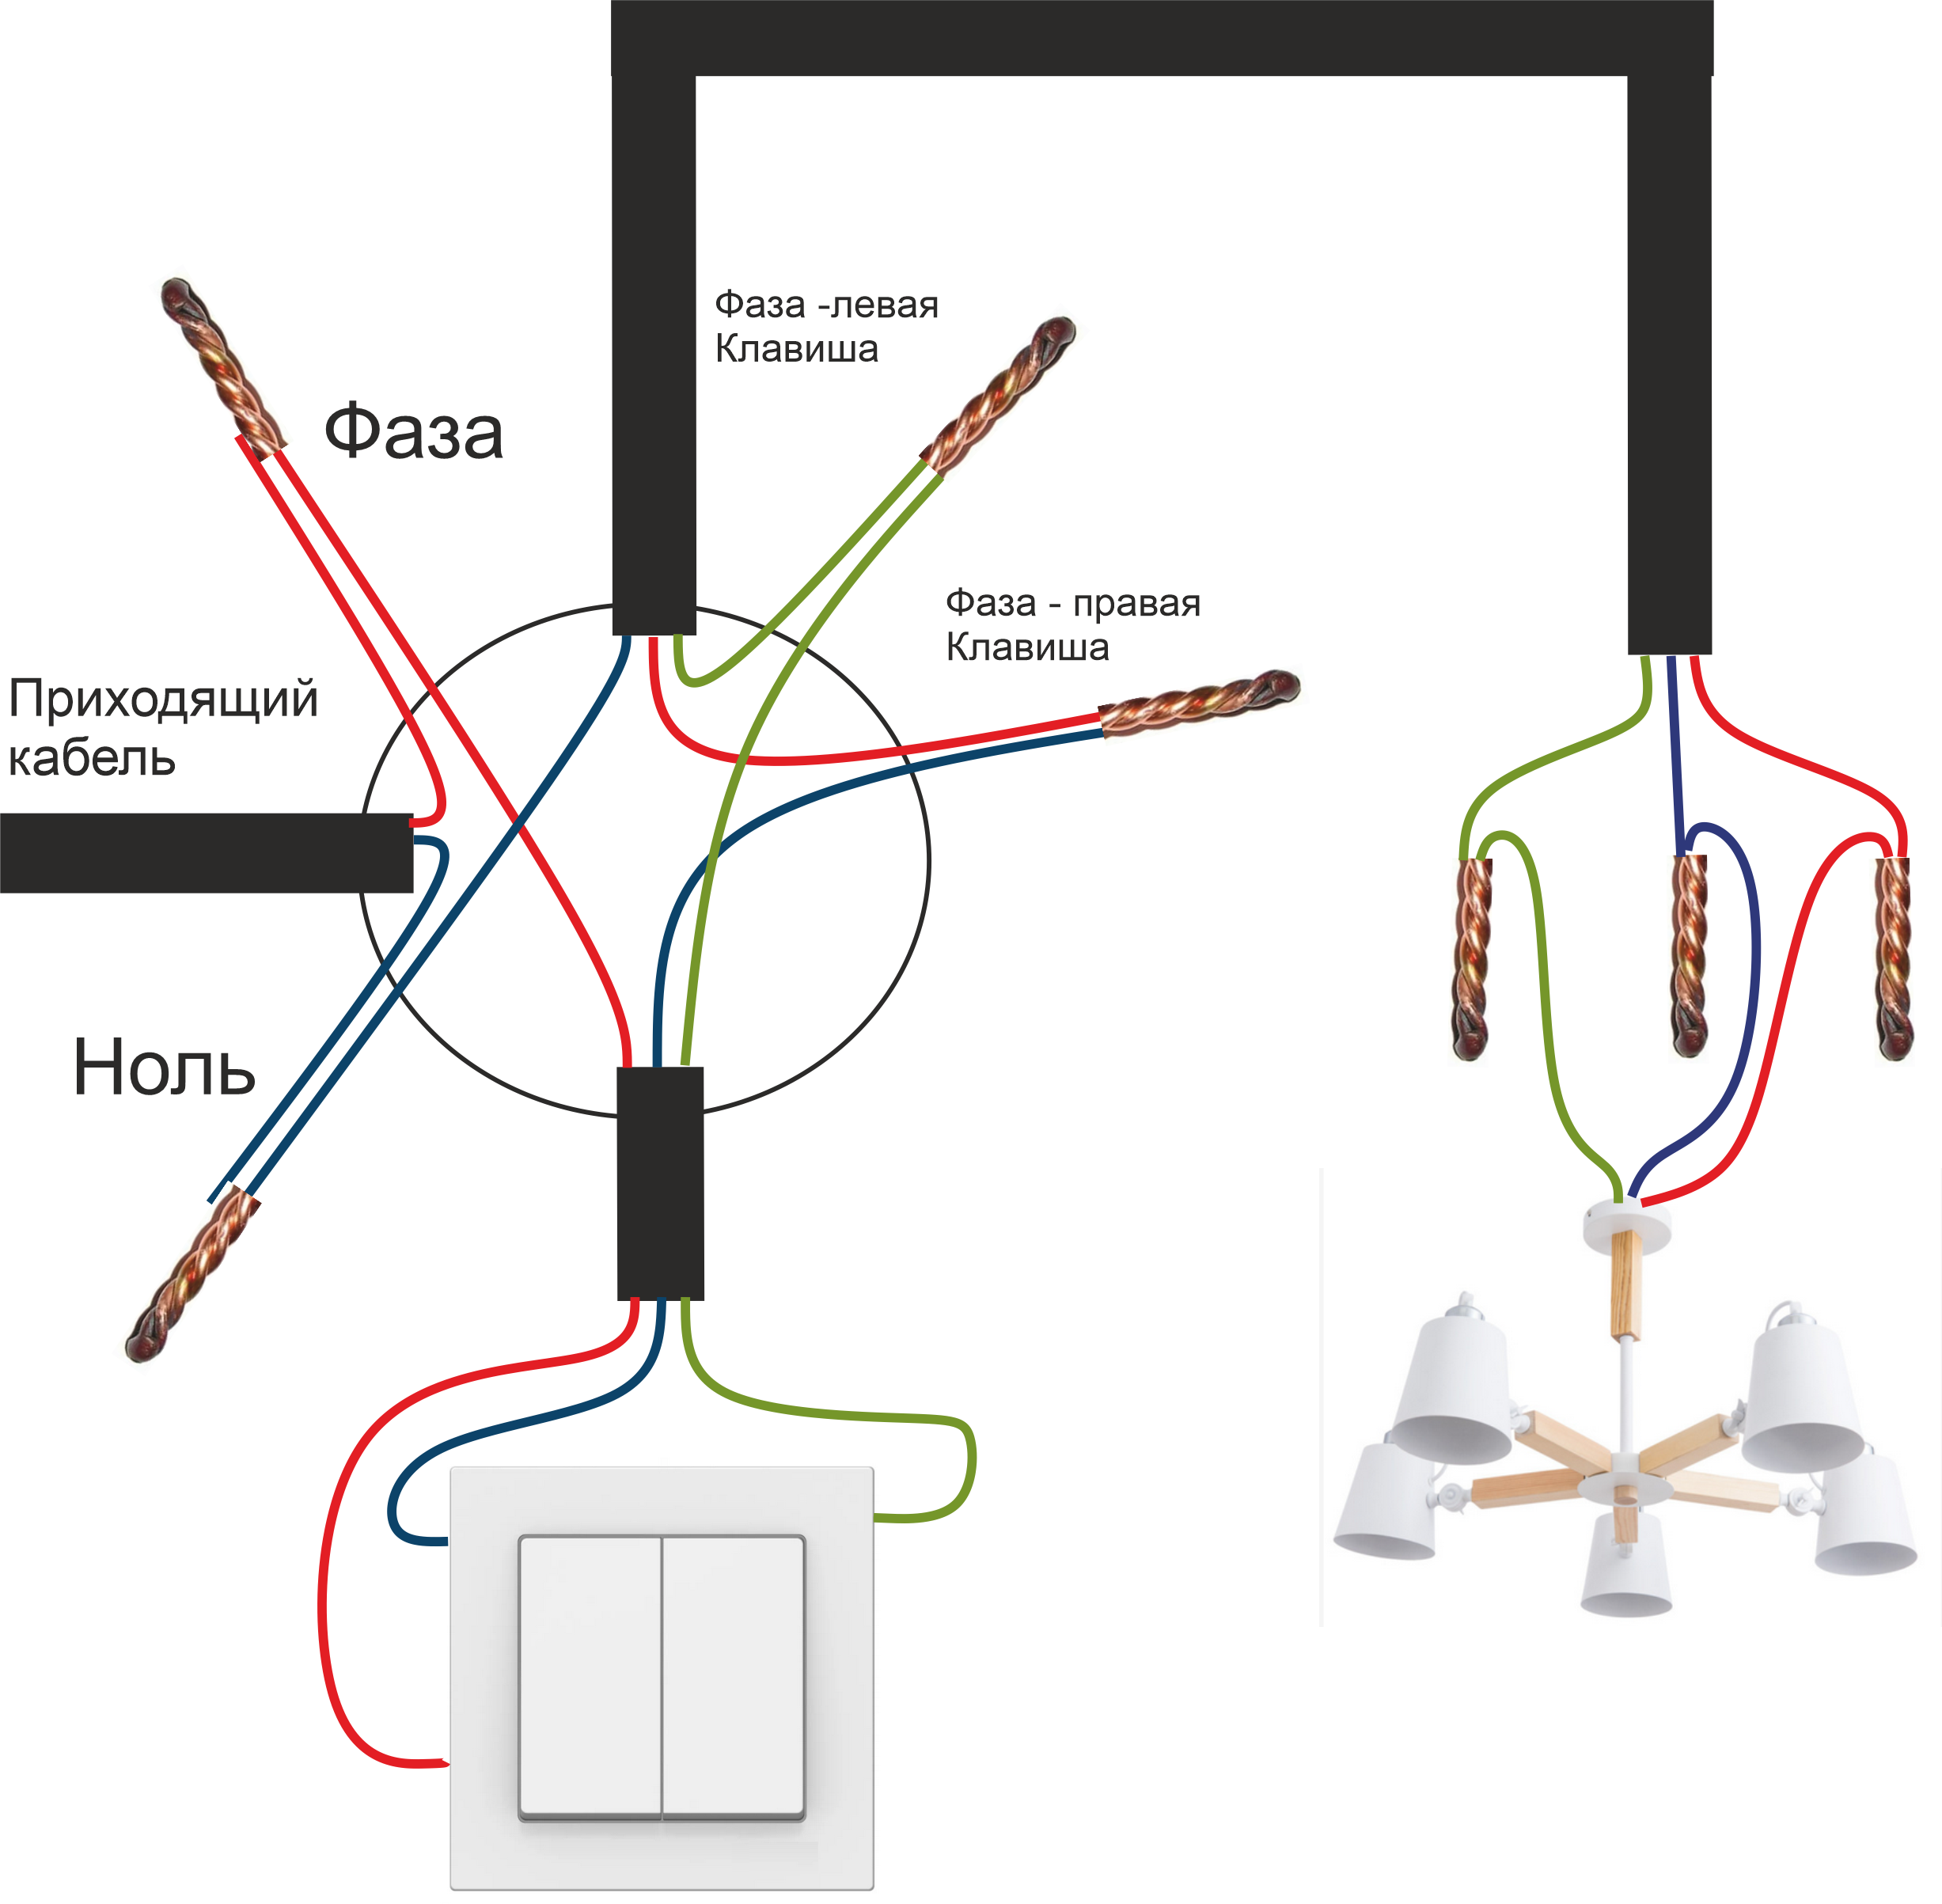 Схема соединения проводов двухклавишного выключателя. Схема подключения двухклавишного выключателя на 2 лампочки. Схема подсоединения двухклавишного выключателя к двум лампочкам. Схема подключения двухклавишного выключателя трехжильным кабелем. Как подключить одинарный выключатель